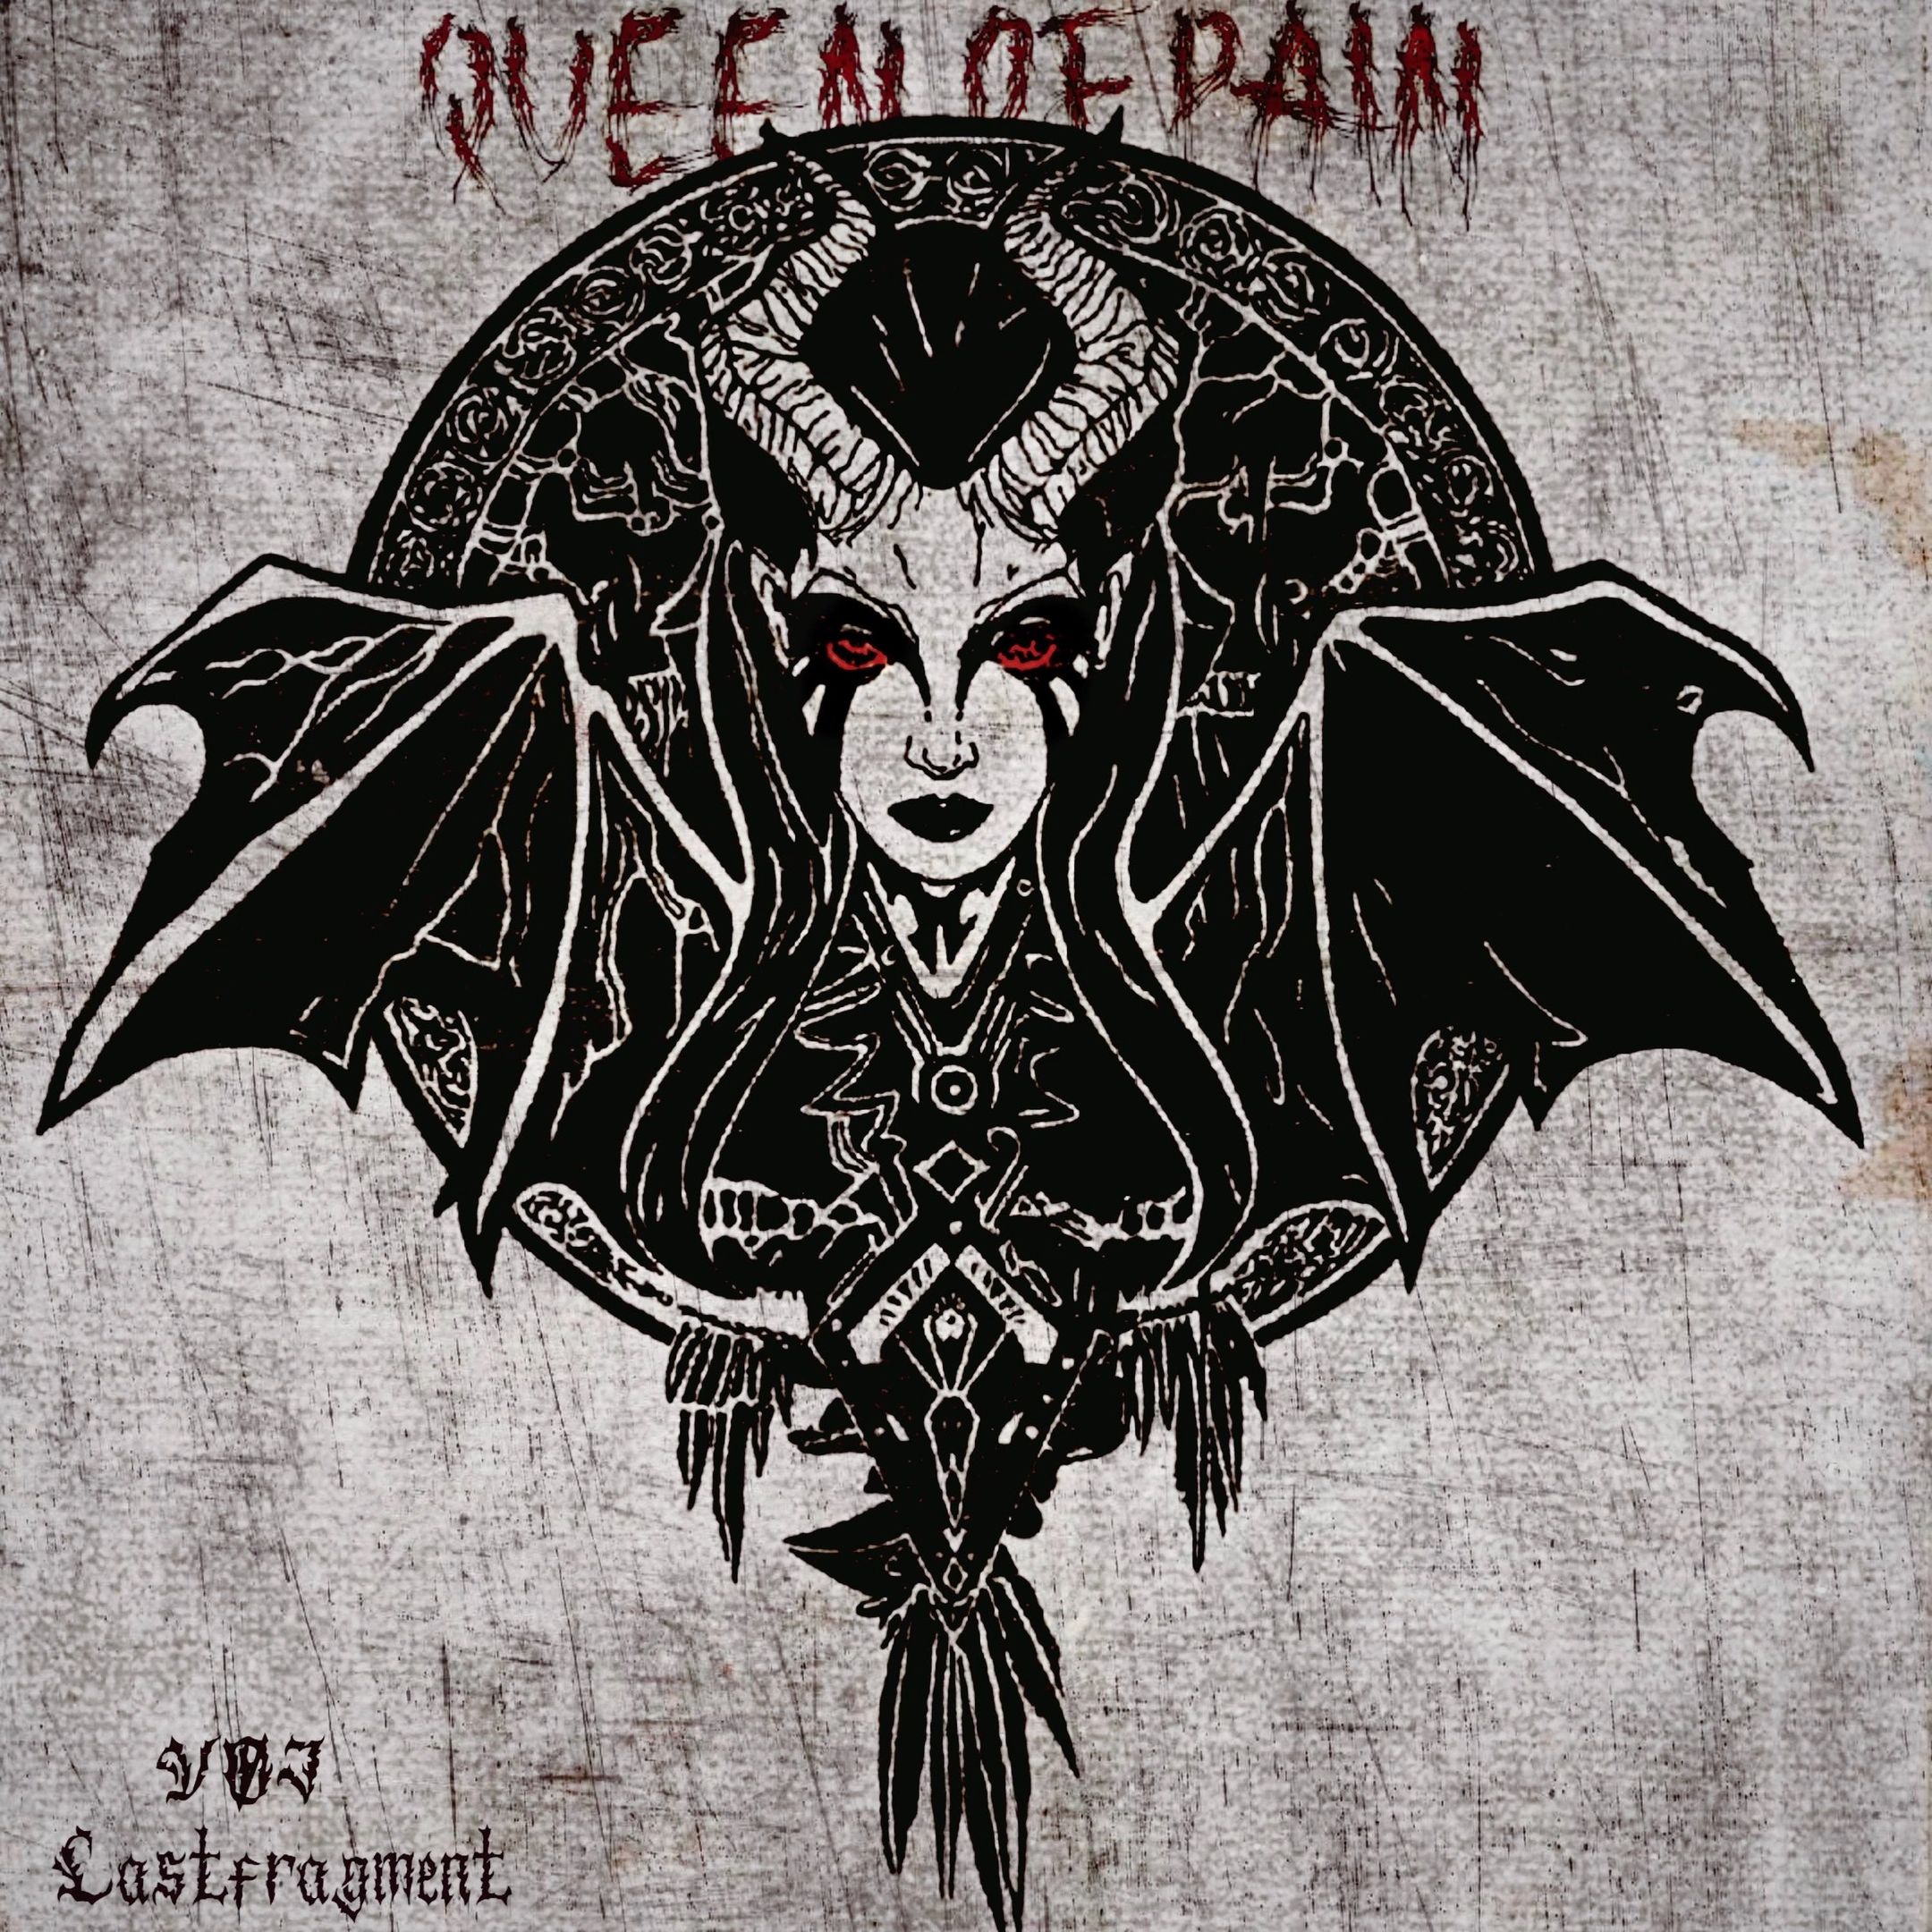 Soo dejiso VØJ & Lastfragment - Queen of Pain